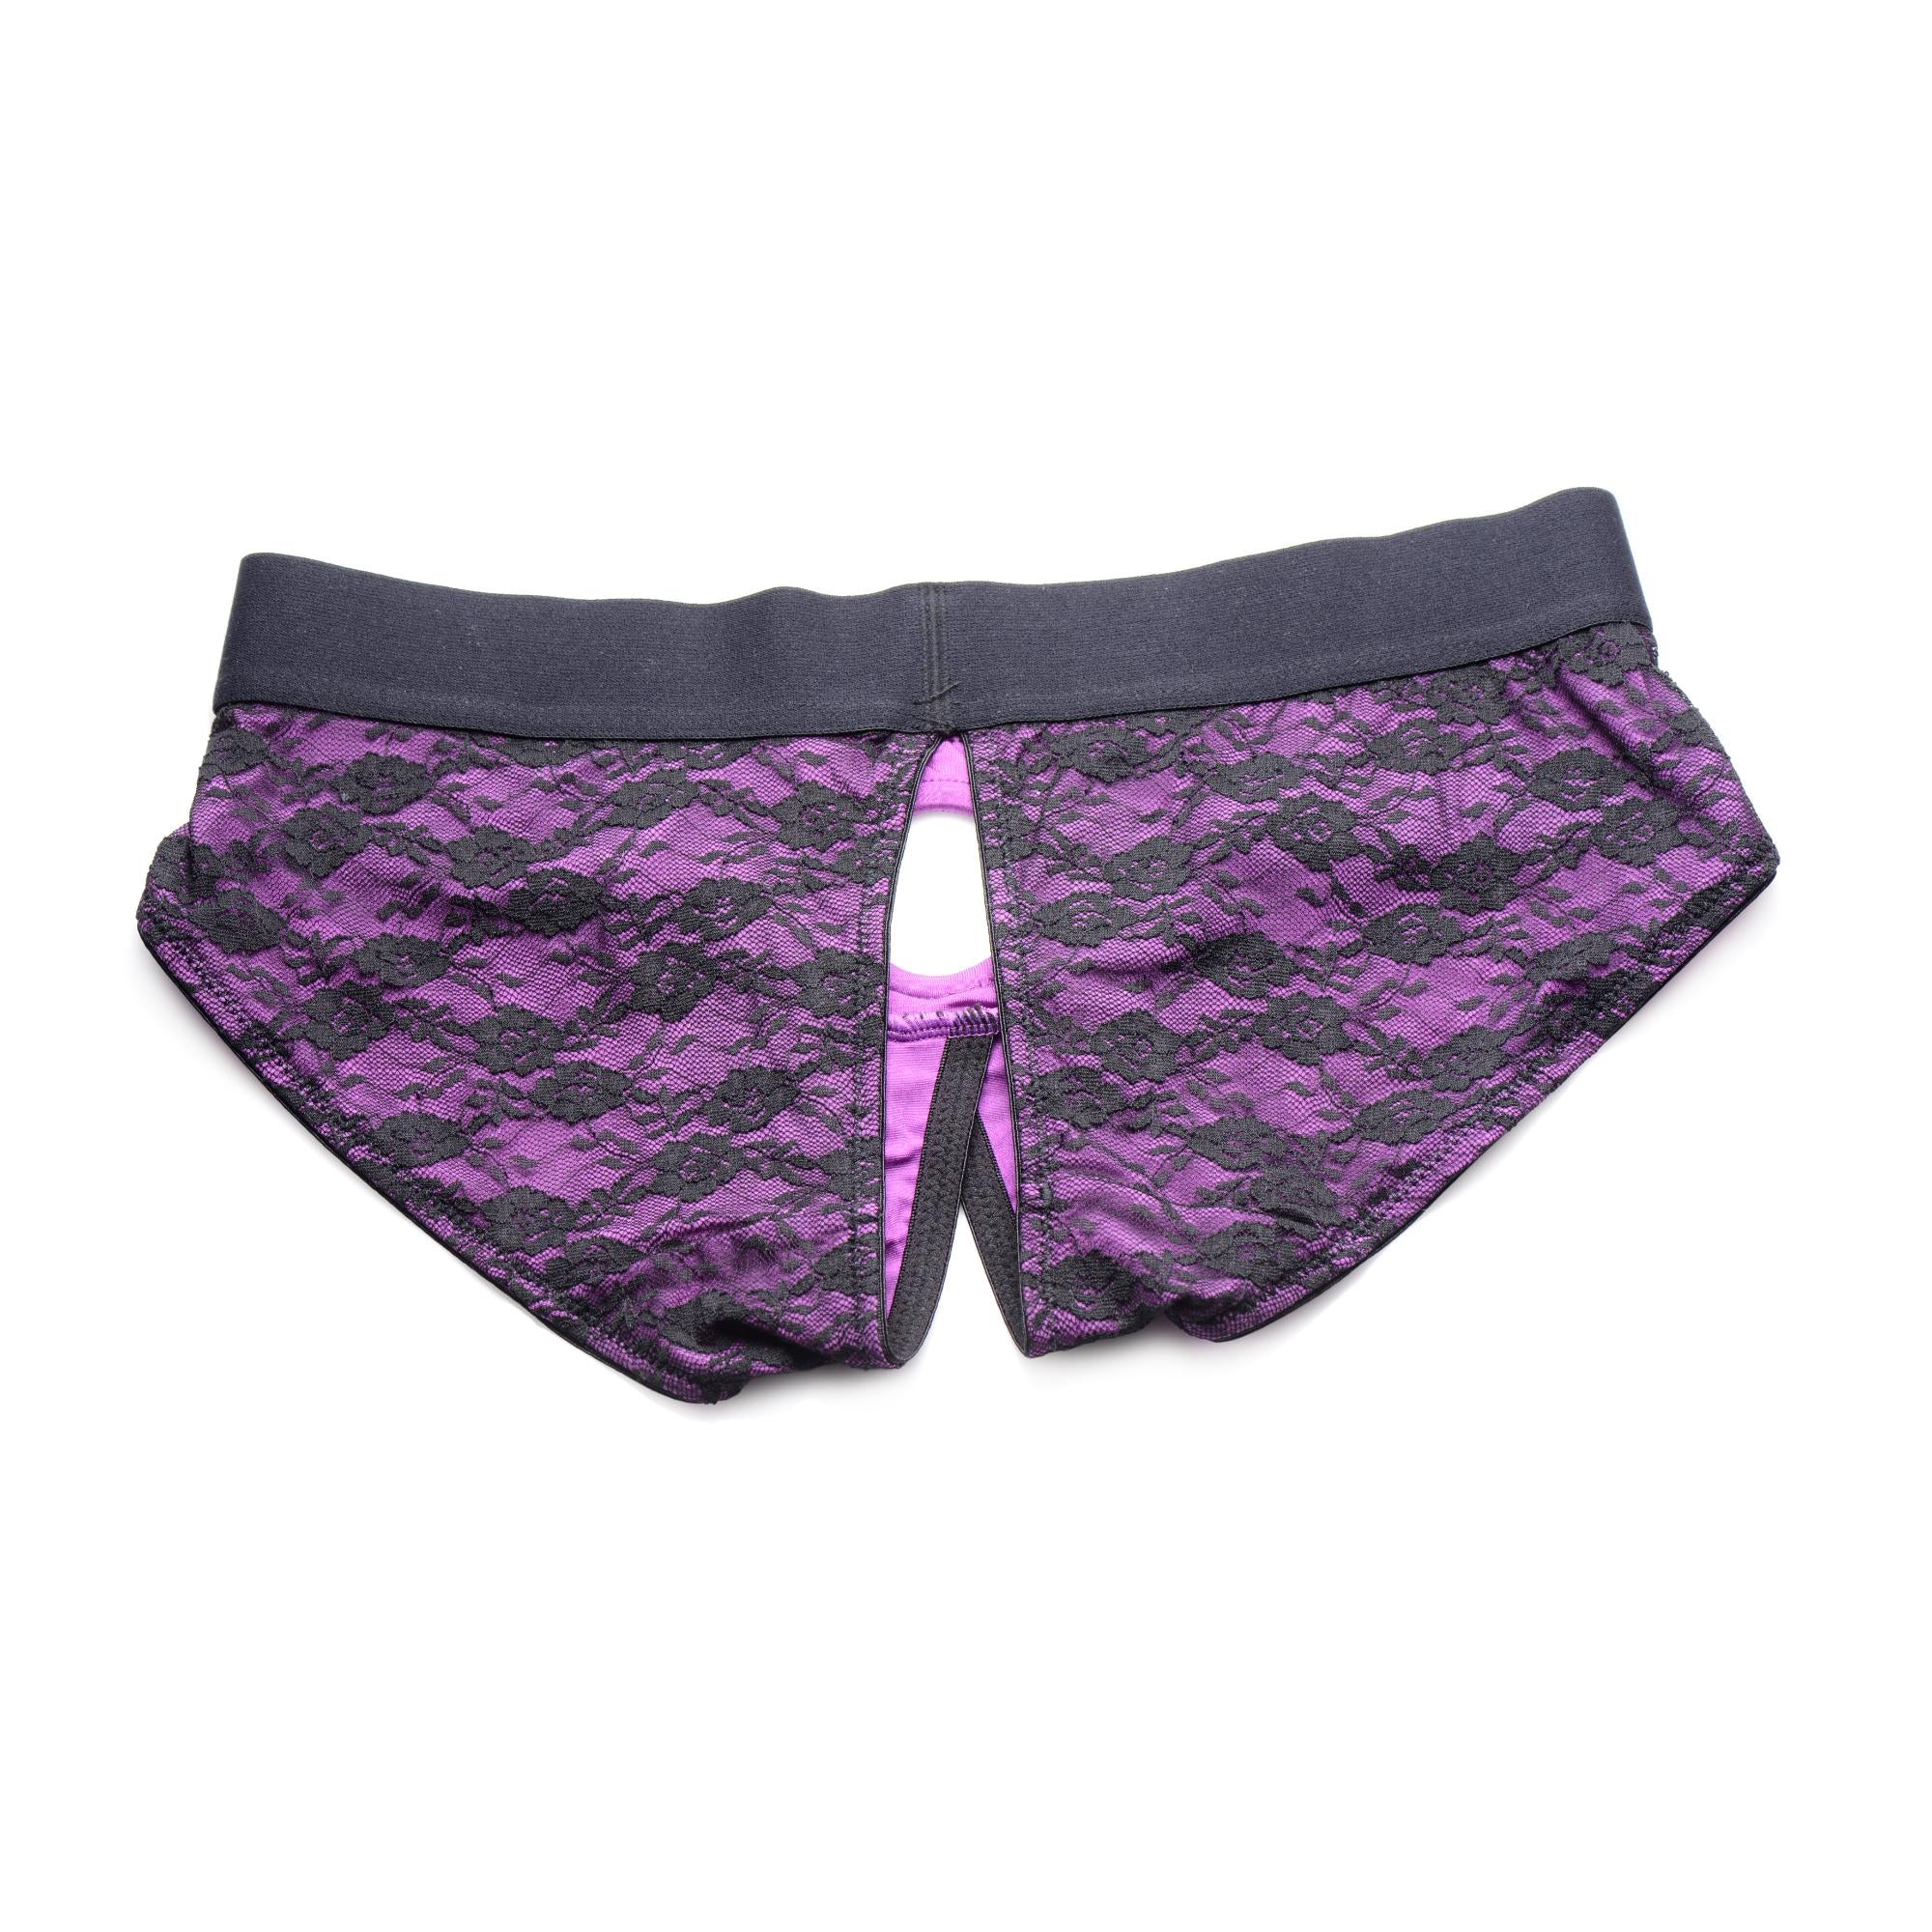 Strap U Lace Envy Crotchless Panty Harness - Purple